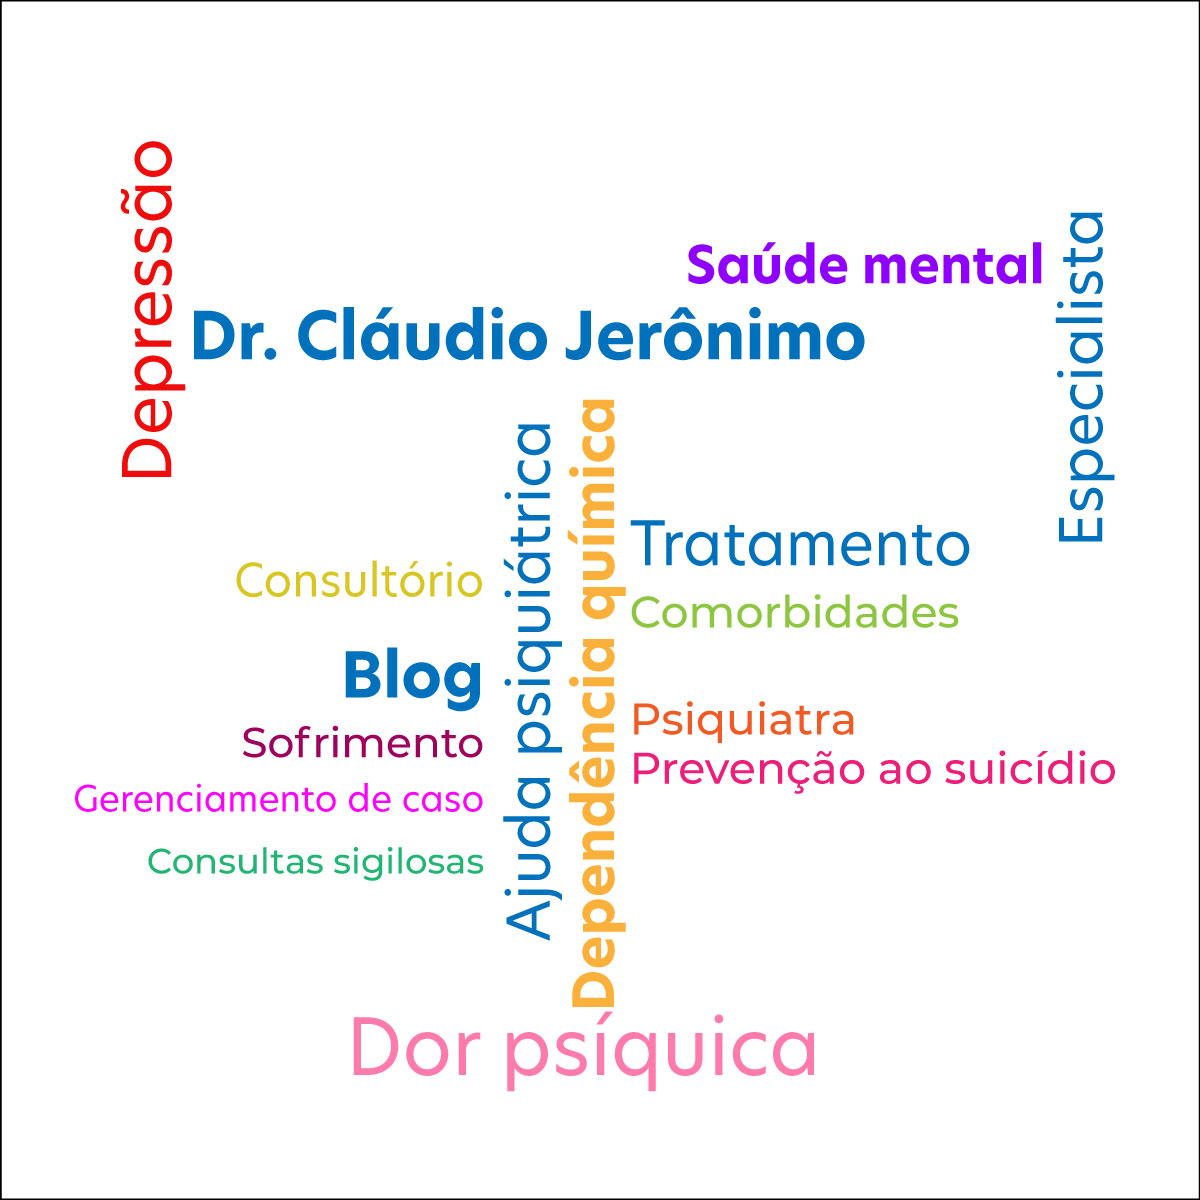 6 razões para procurar médico psiquiatra » Dr. Cláudio Jerônimo